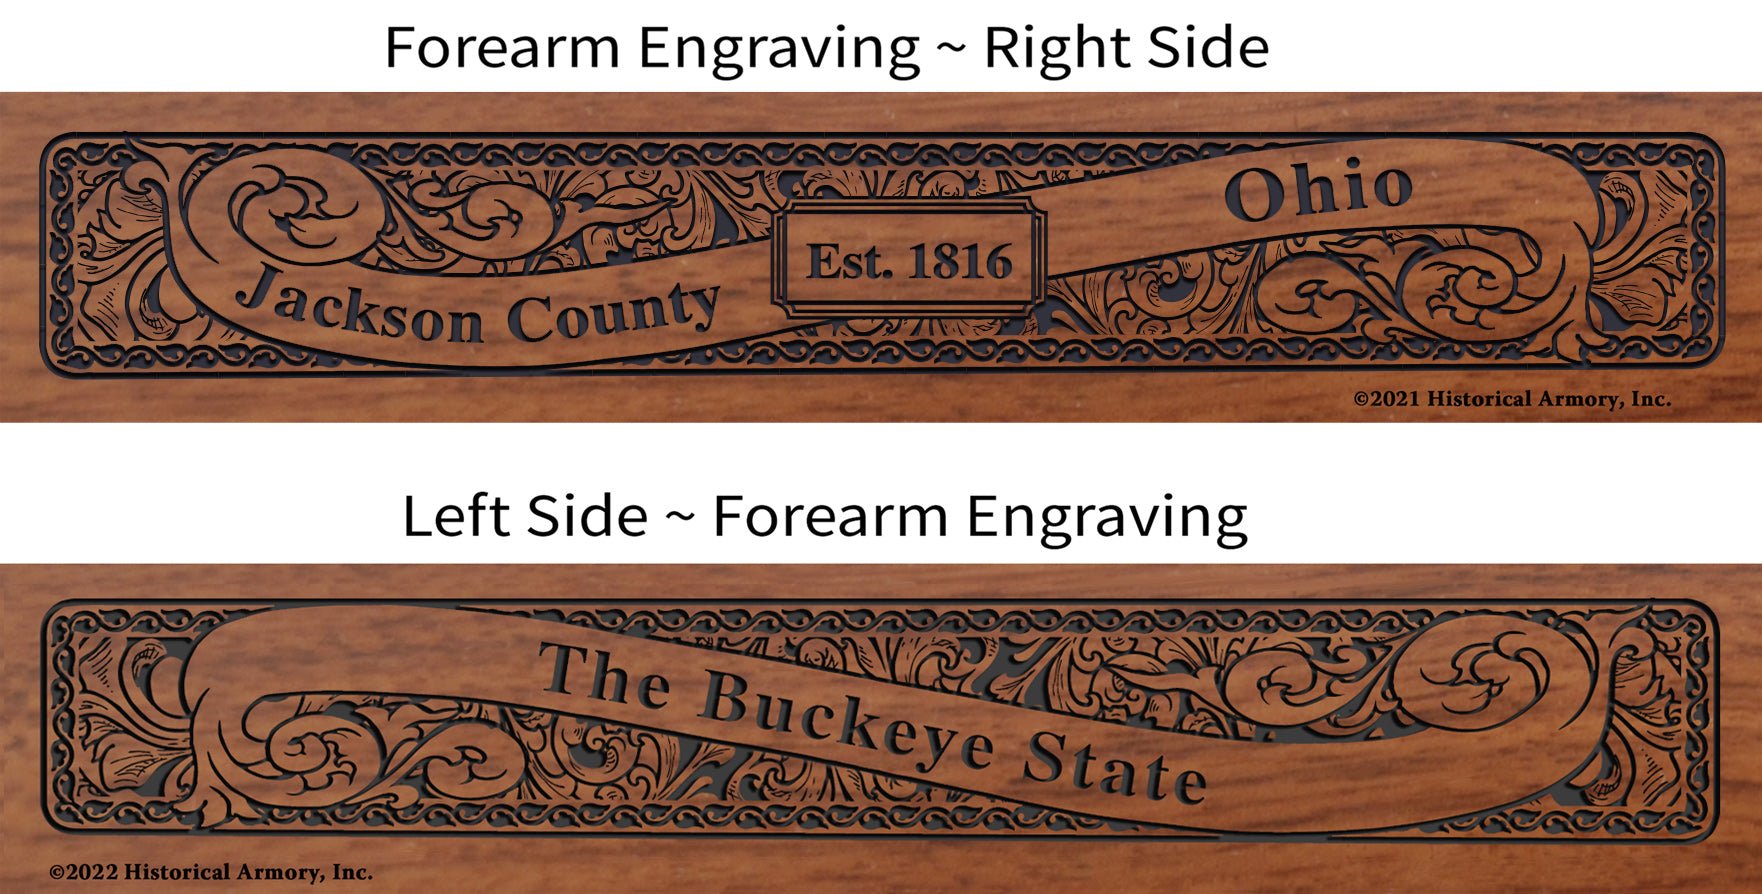 Jackson County Ohio Engraved Rifle Forearm